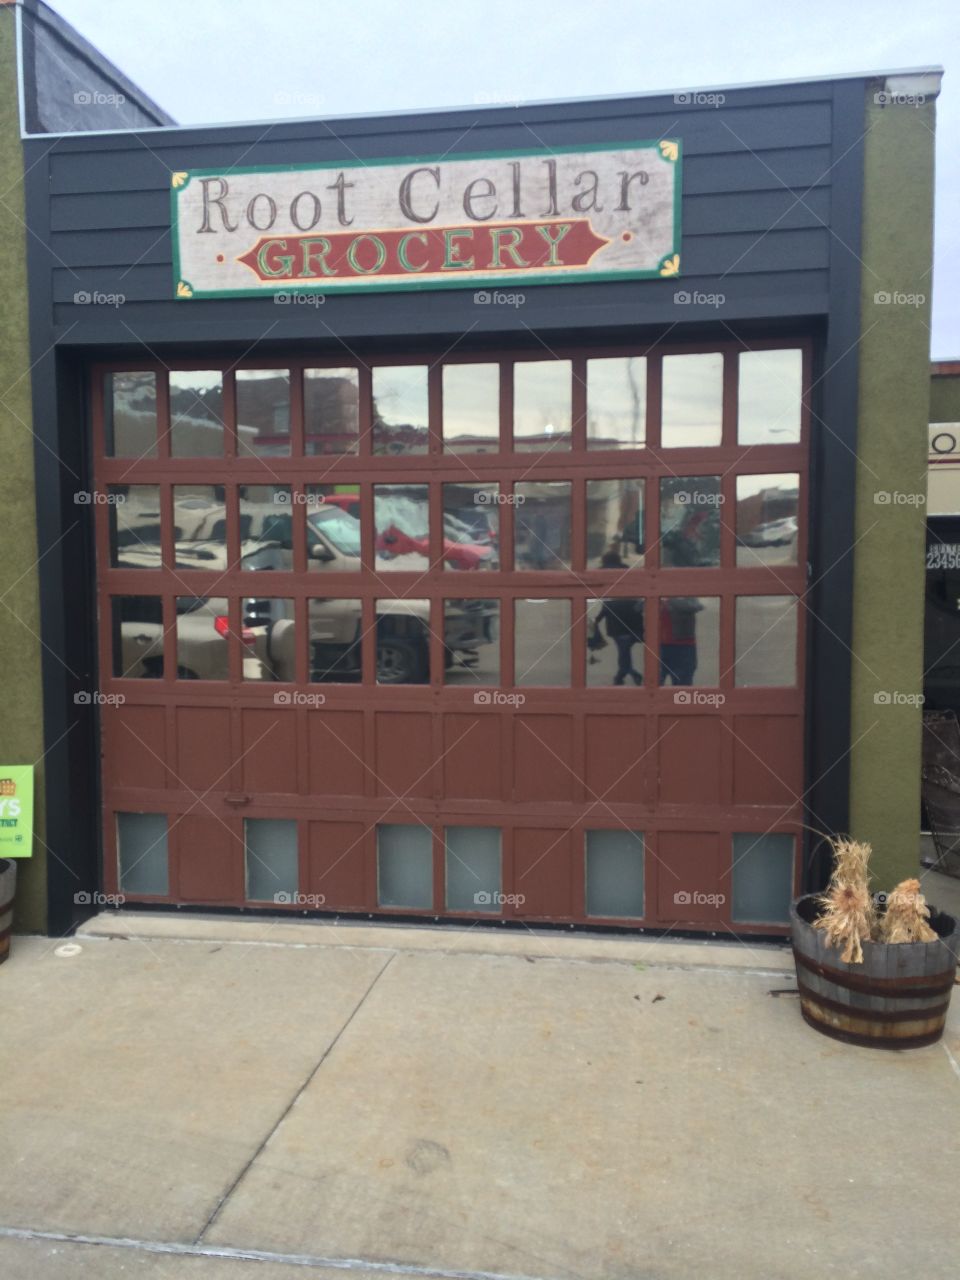 Root Cellar
Door
Building
Window
Garage